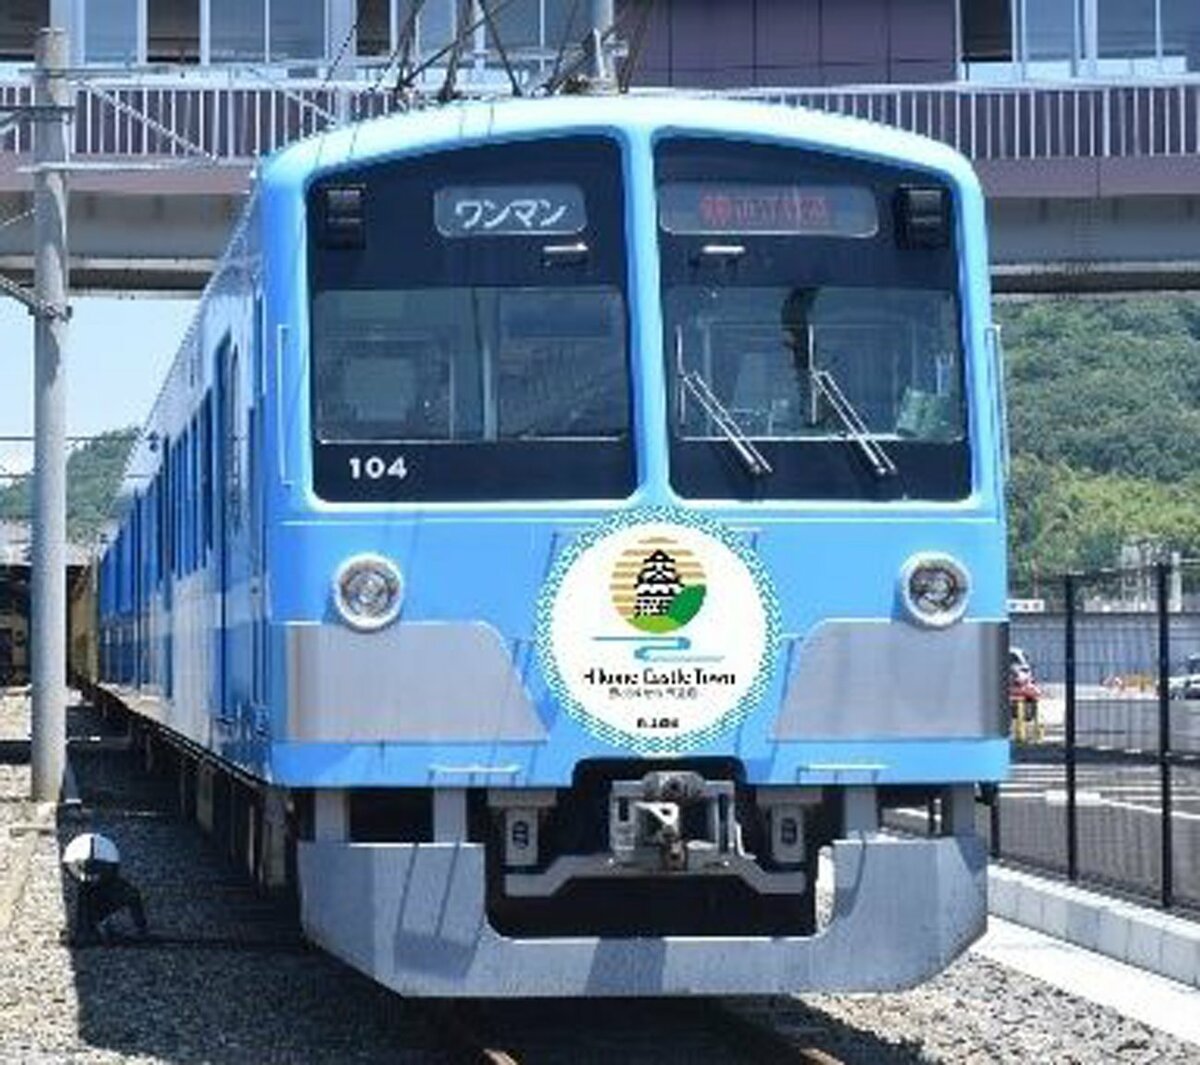 彦根城を世界遺産に　近江鉄道が3月に特別電車を運行、乗車希望者を募る